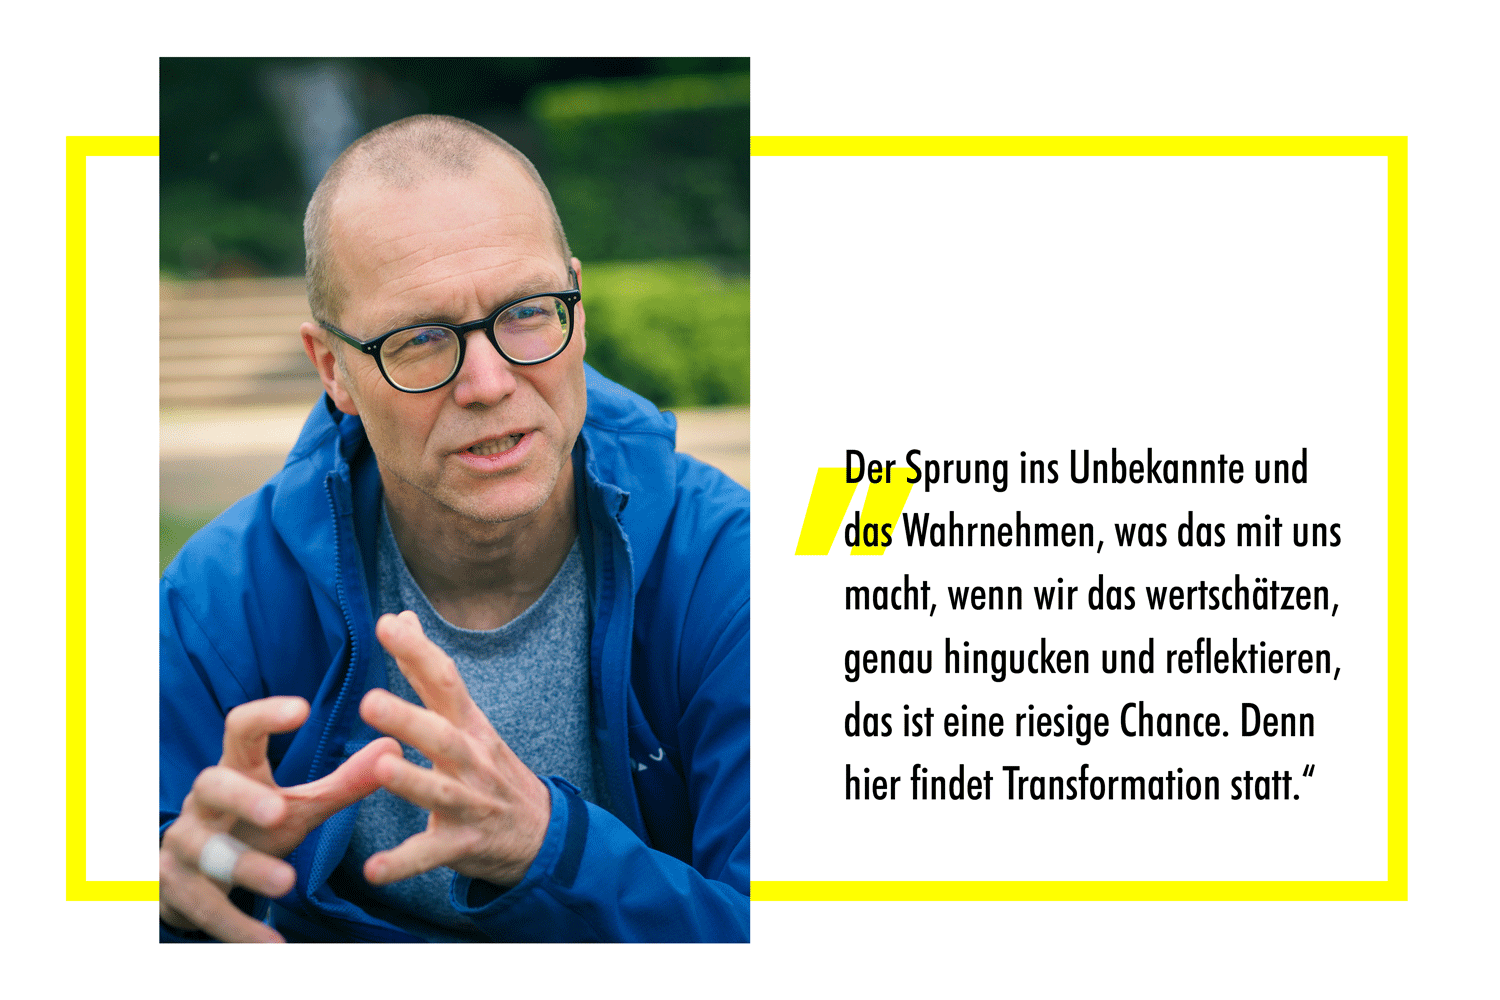 Stefan Fuchs im Gespräch über Transformation